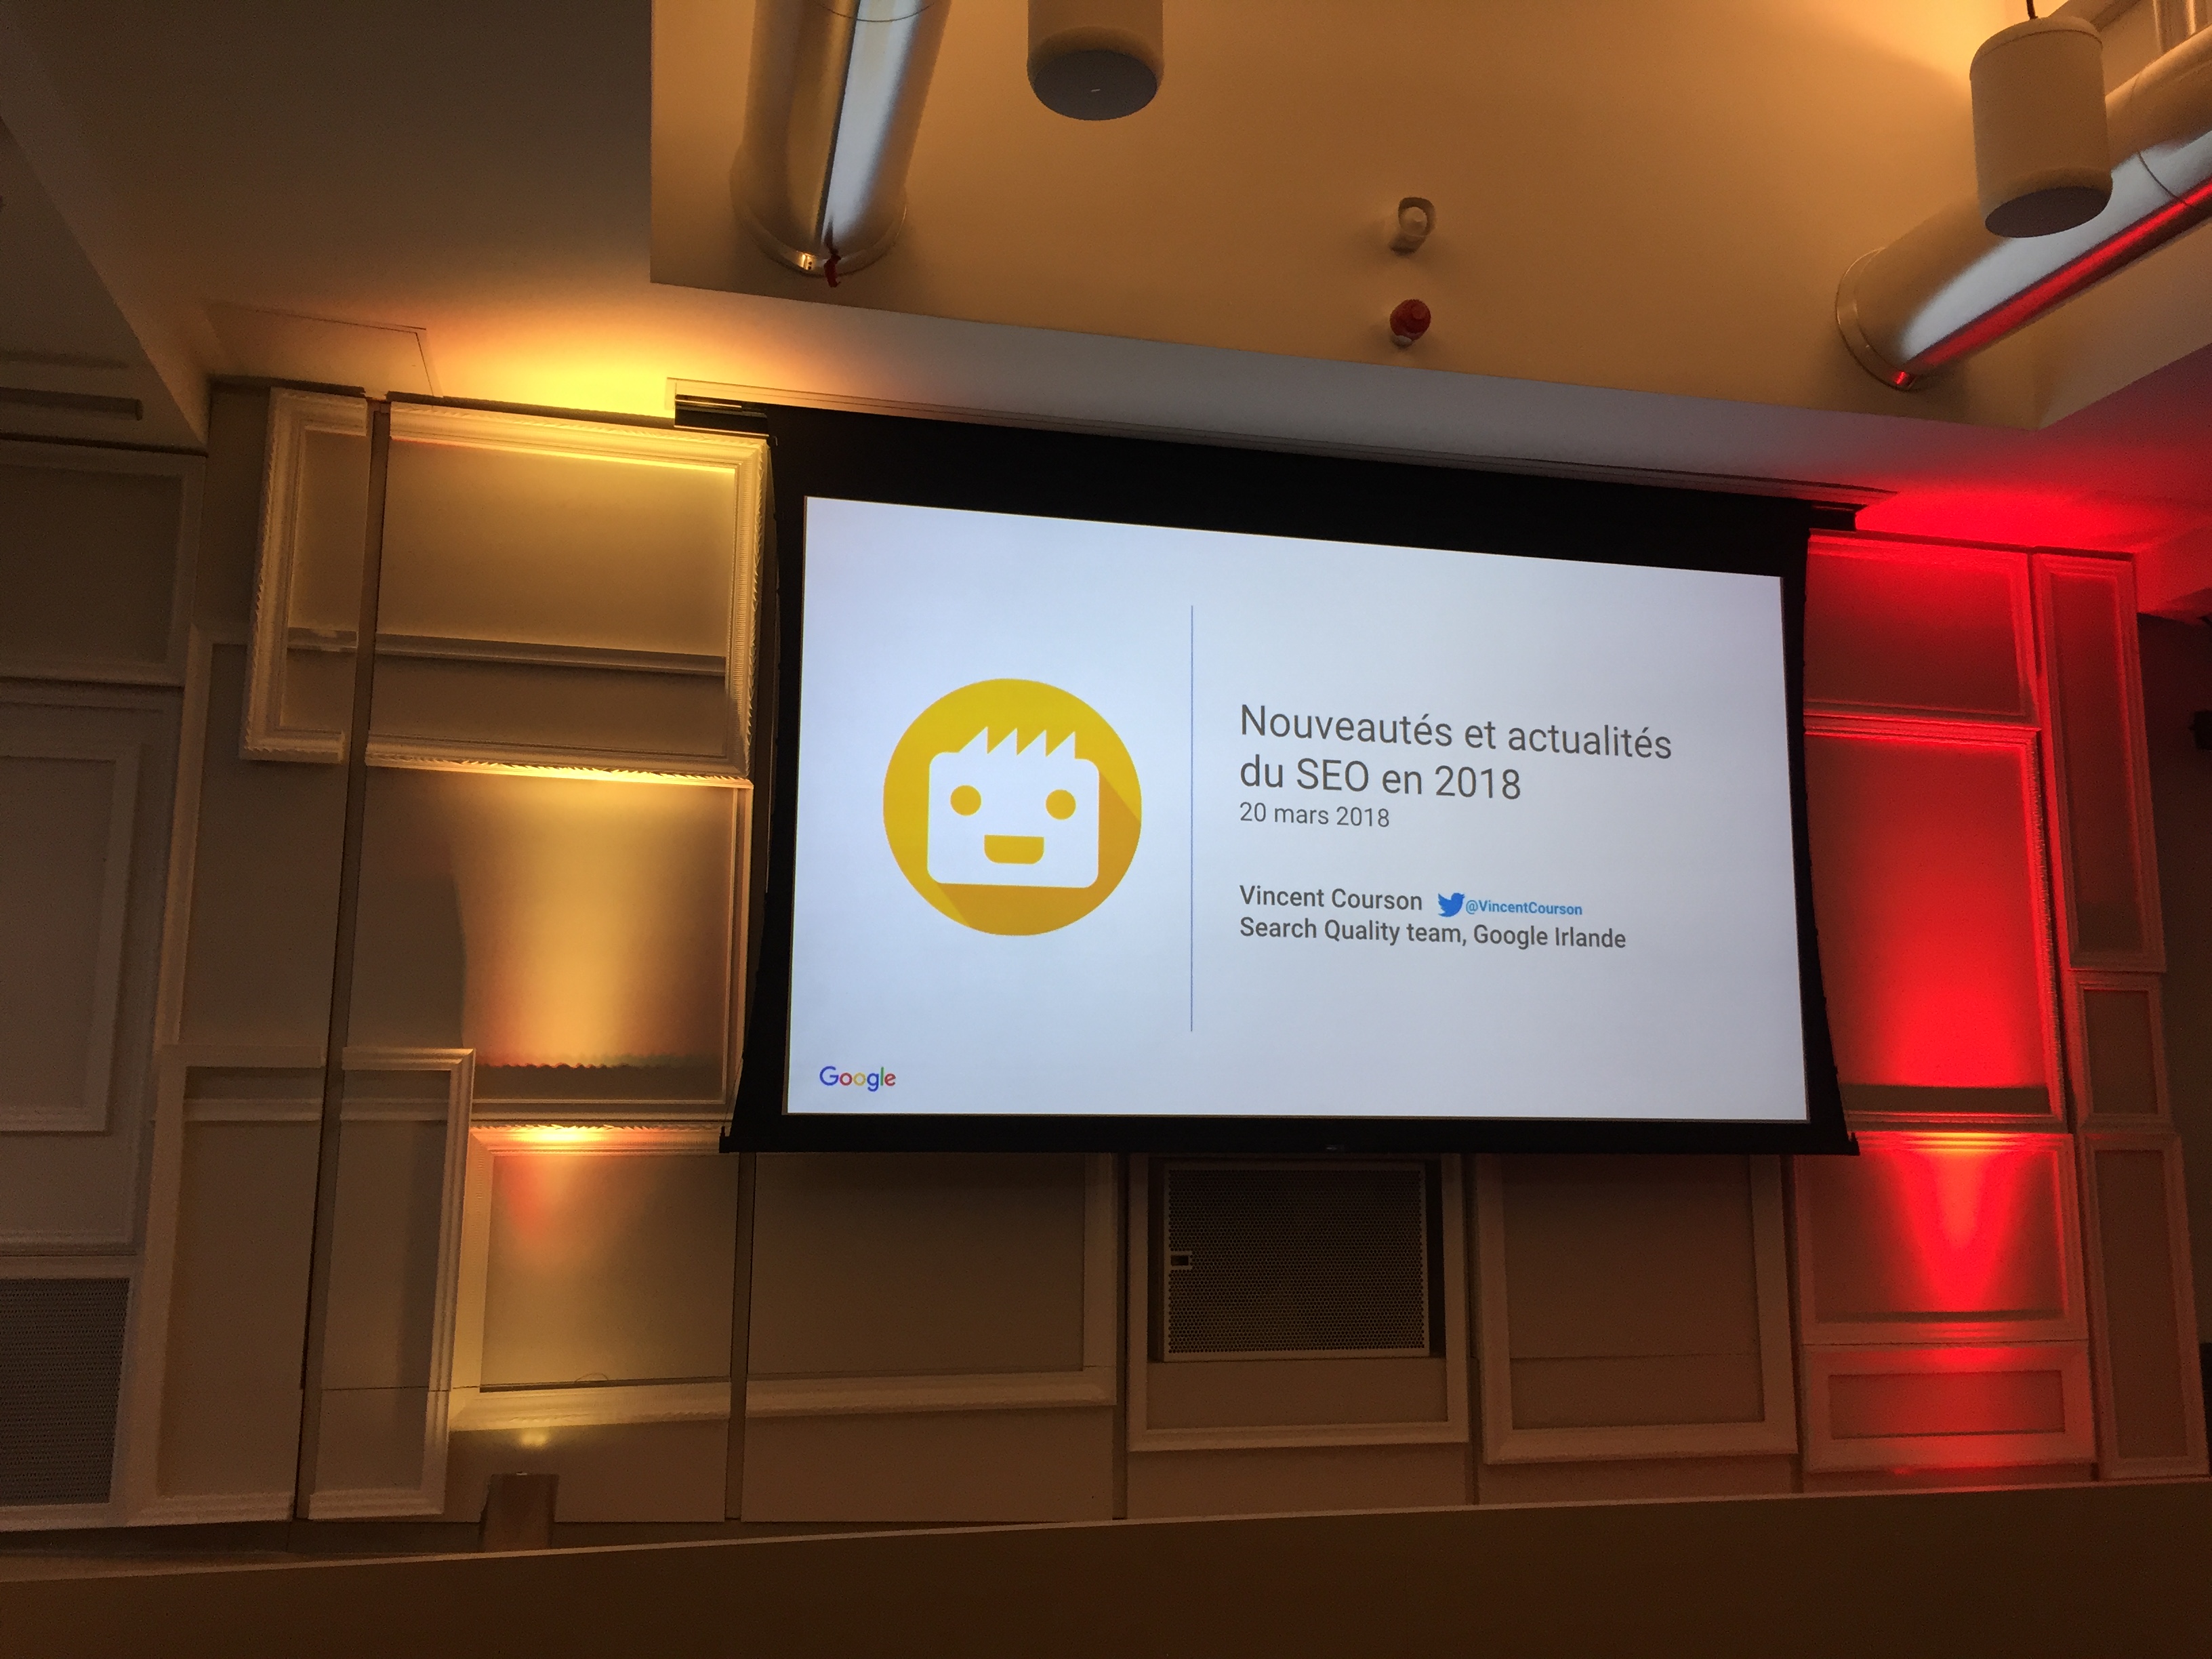 20 марта часть команды Myposeo присутствовала на территории Google, чтобы следить за конференцией « Новости и обновления с SEO 2018» , которую проводил Винсент Курсон, специалист по поисковой работе в Google